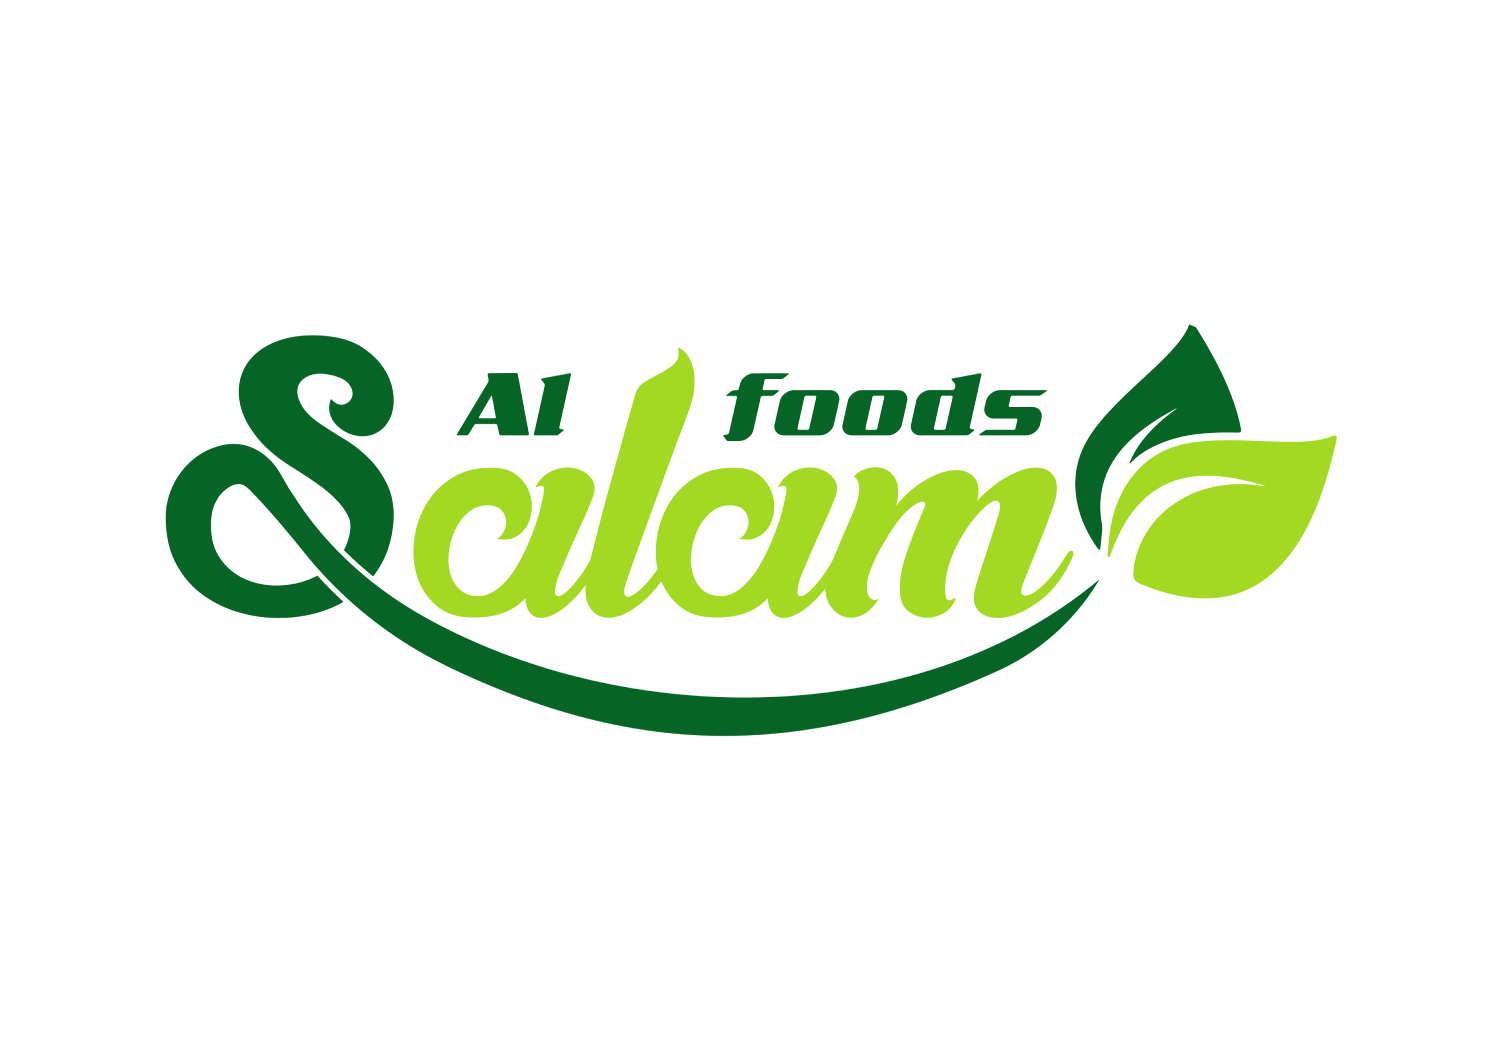 Al Salem foods